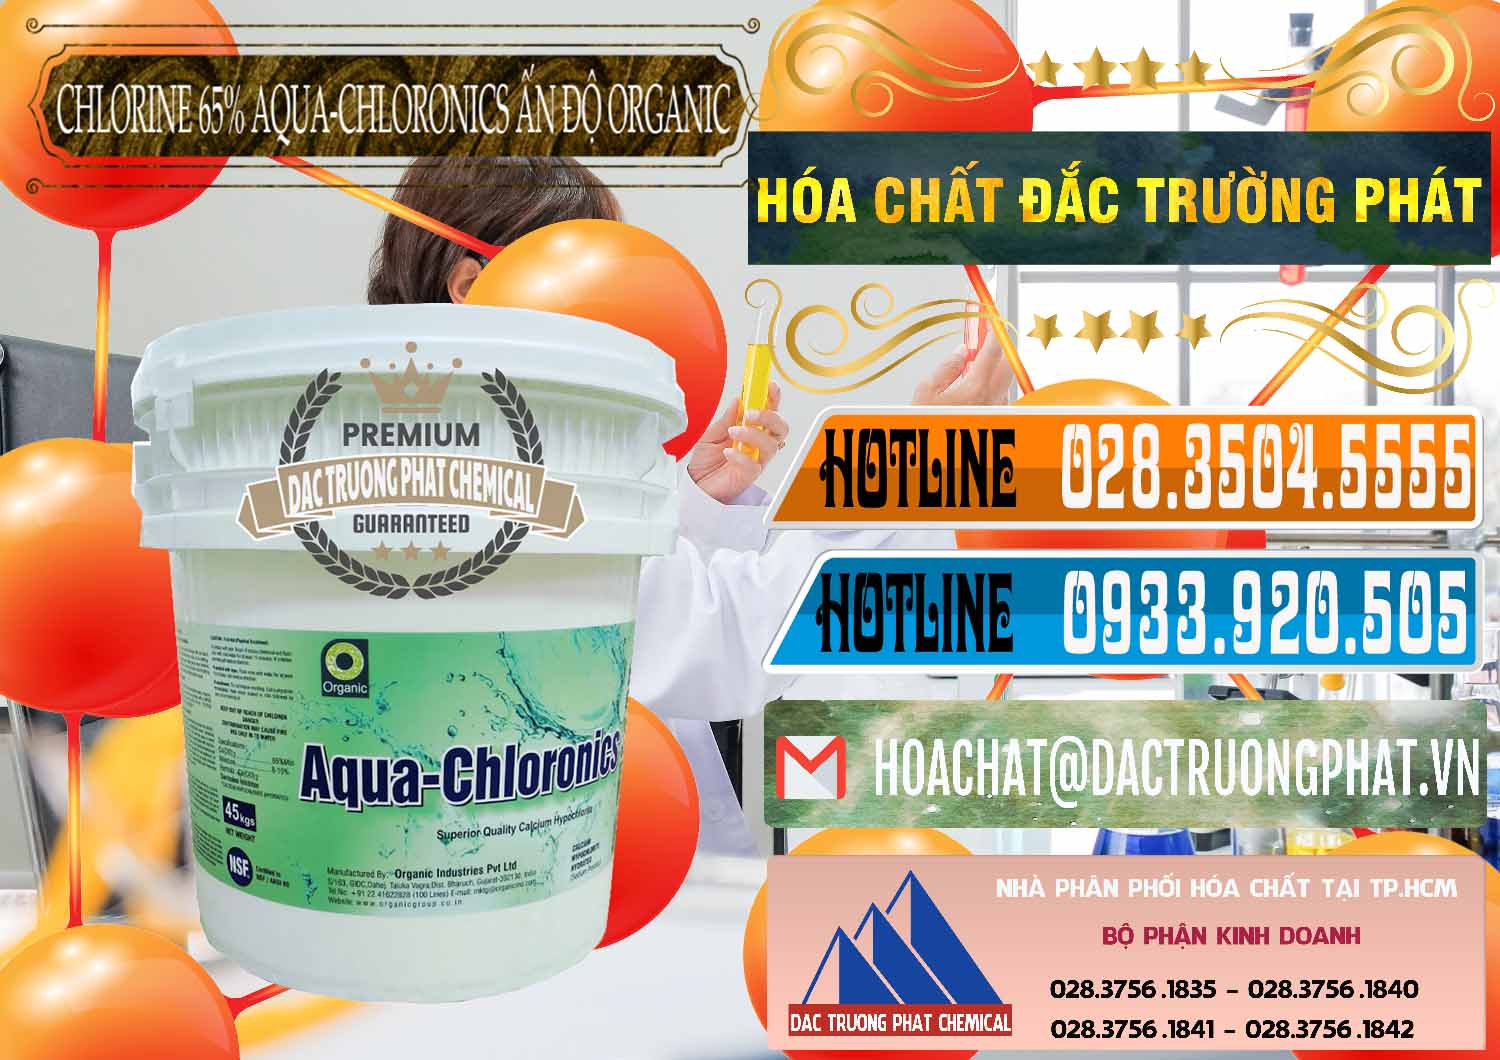 Công ty chuyên cung ứng và bán Chlorine – Clorin 65% Aqua-Chloronics Ấn Độ Organic India - 0210 - Cty bán _ phân phối hóa chất tại TP.HCM - stmp.net